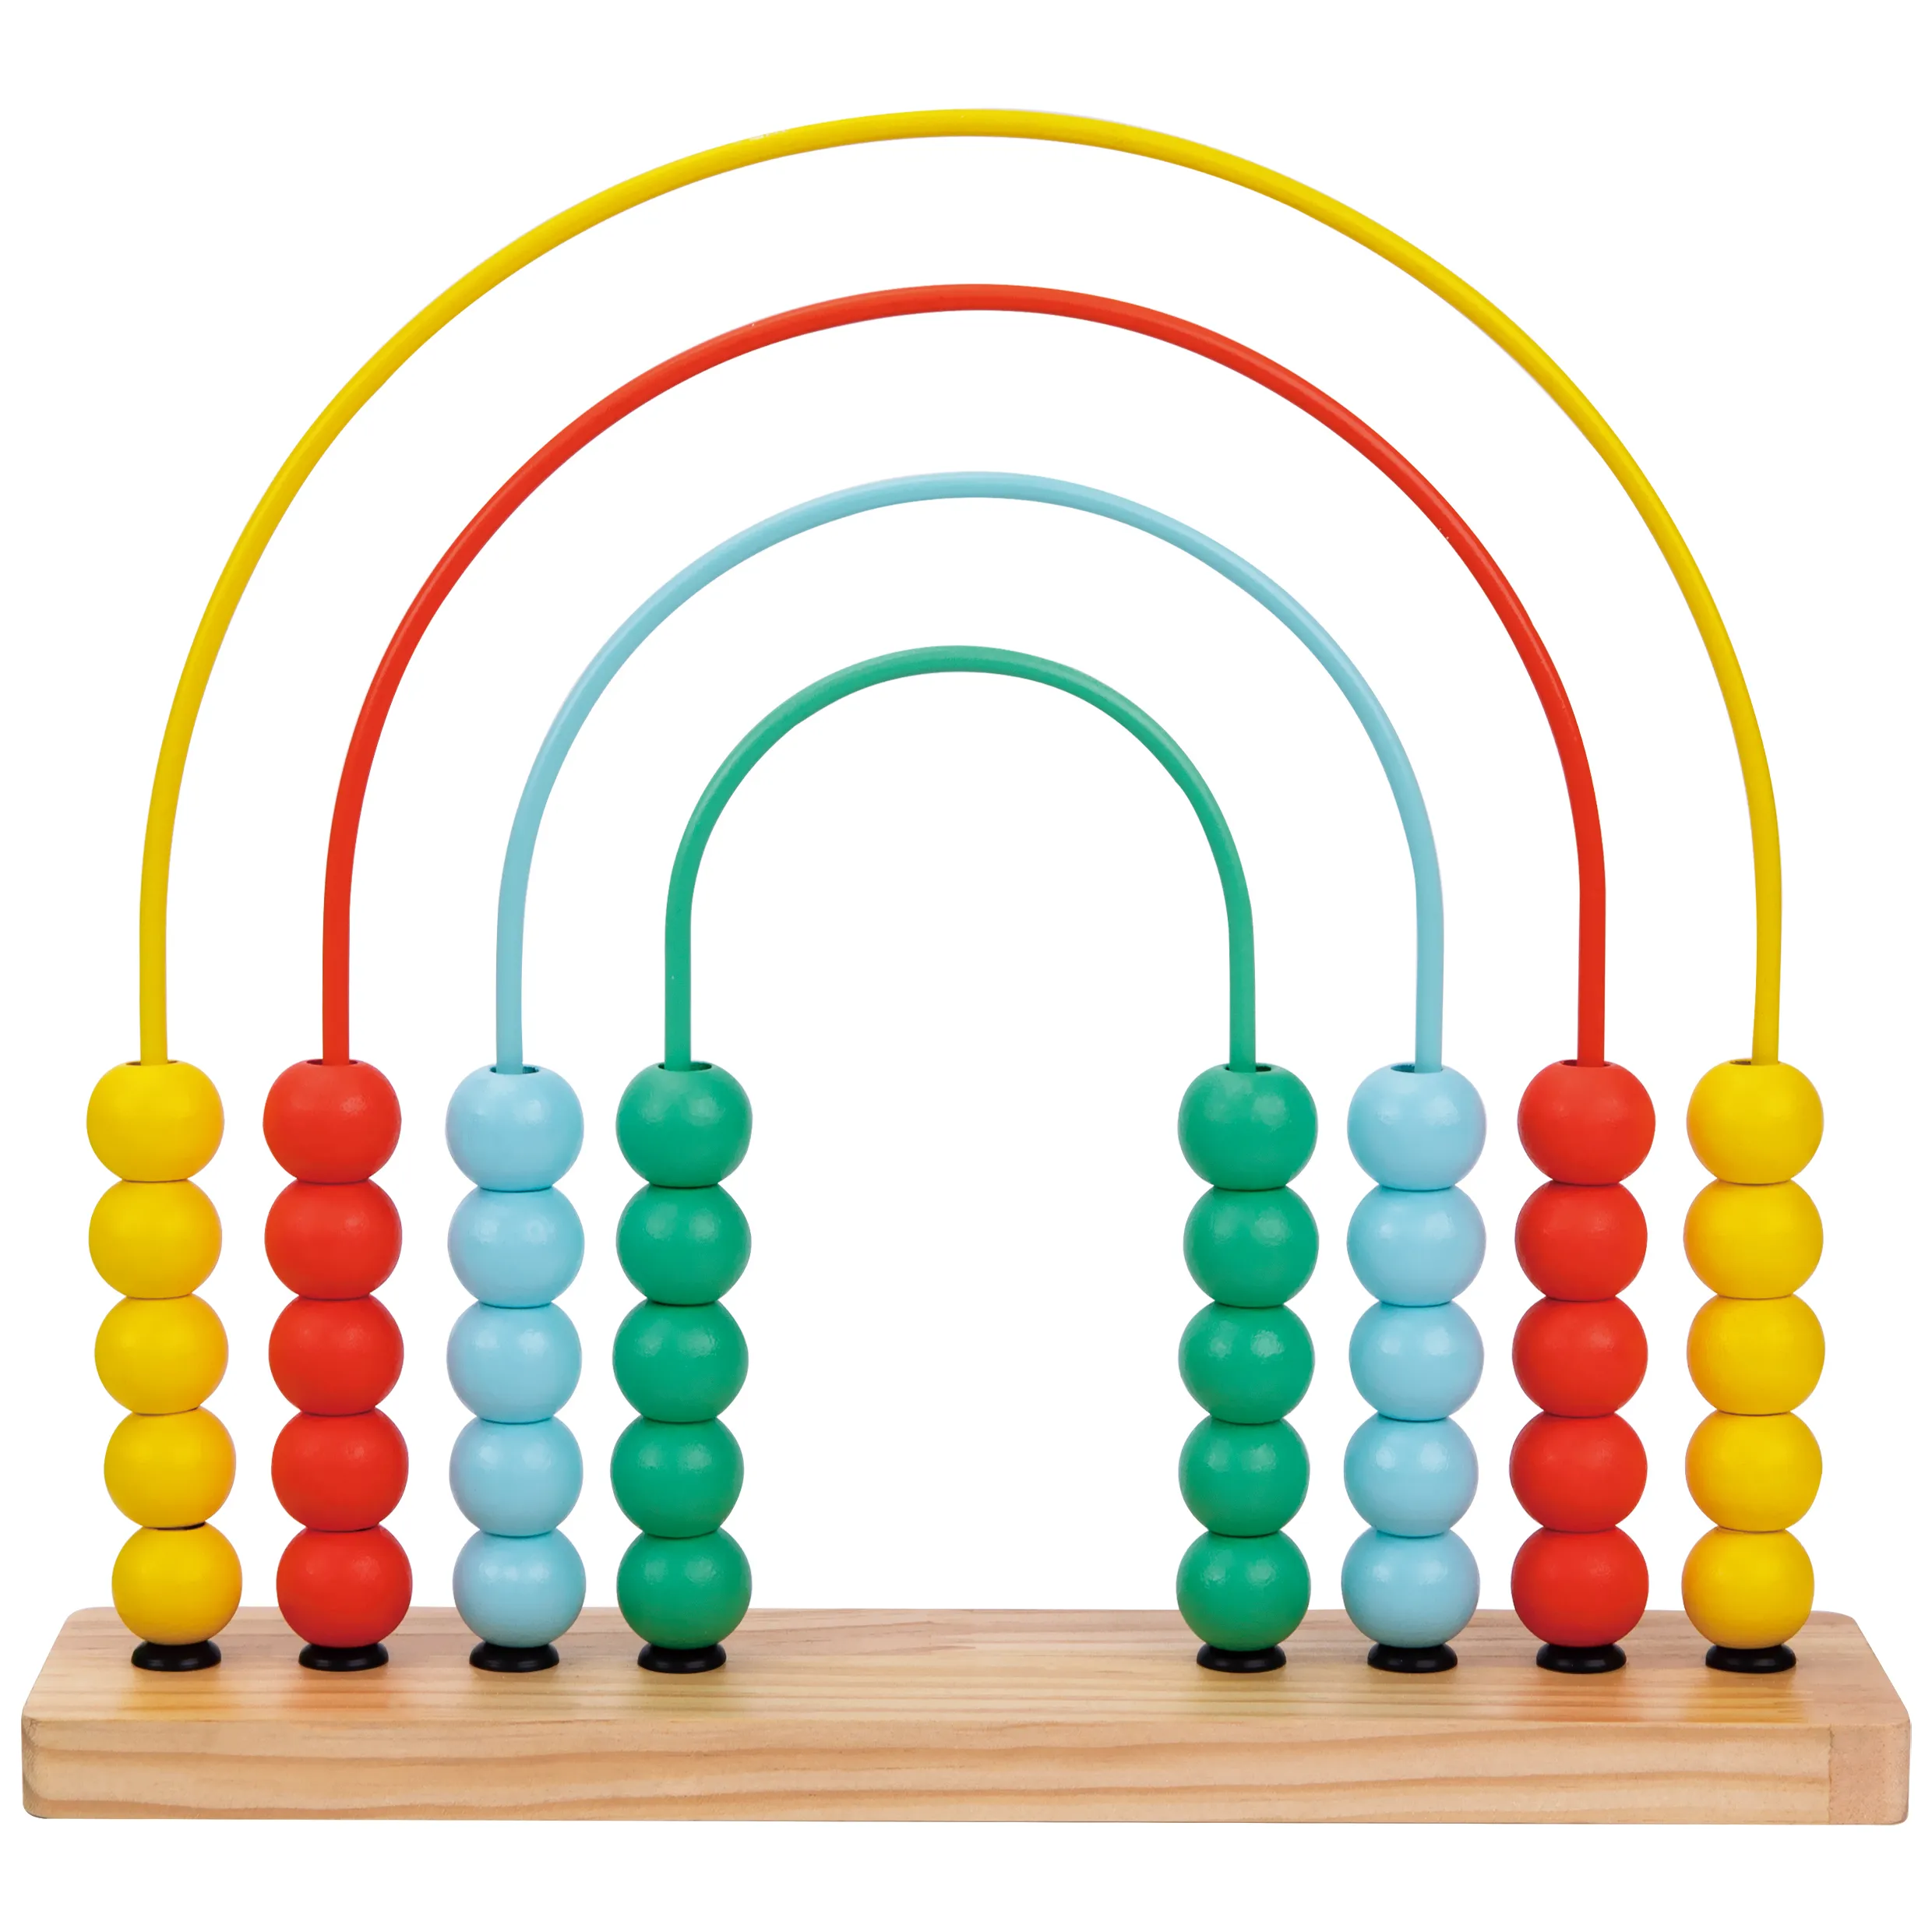 लकड़ी के इंद्रधनुष एबेकस बच्चों की गिनती खिलौने की शुरुआती गणित कौशल मोंटेसरी शैक्षिक सीखने के खेल